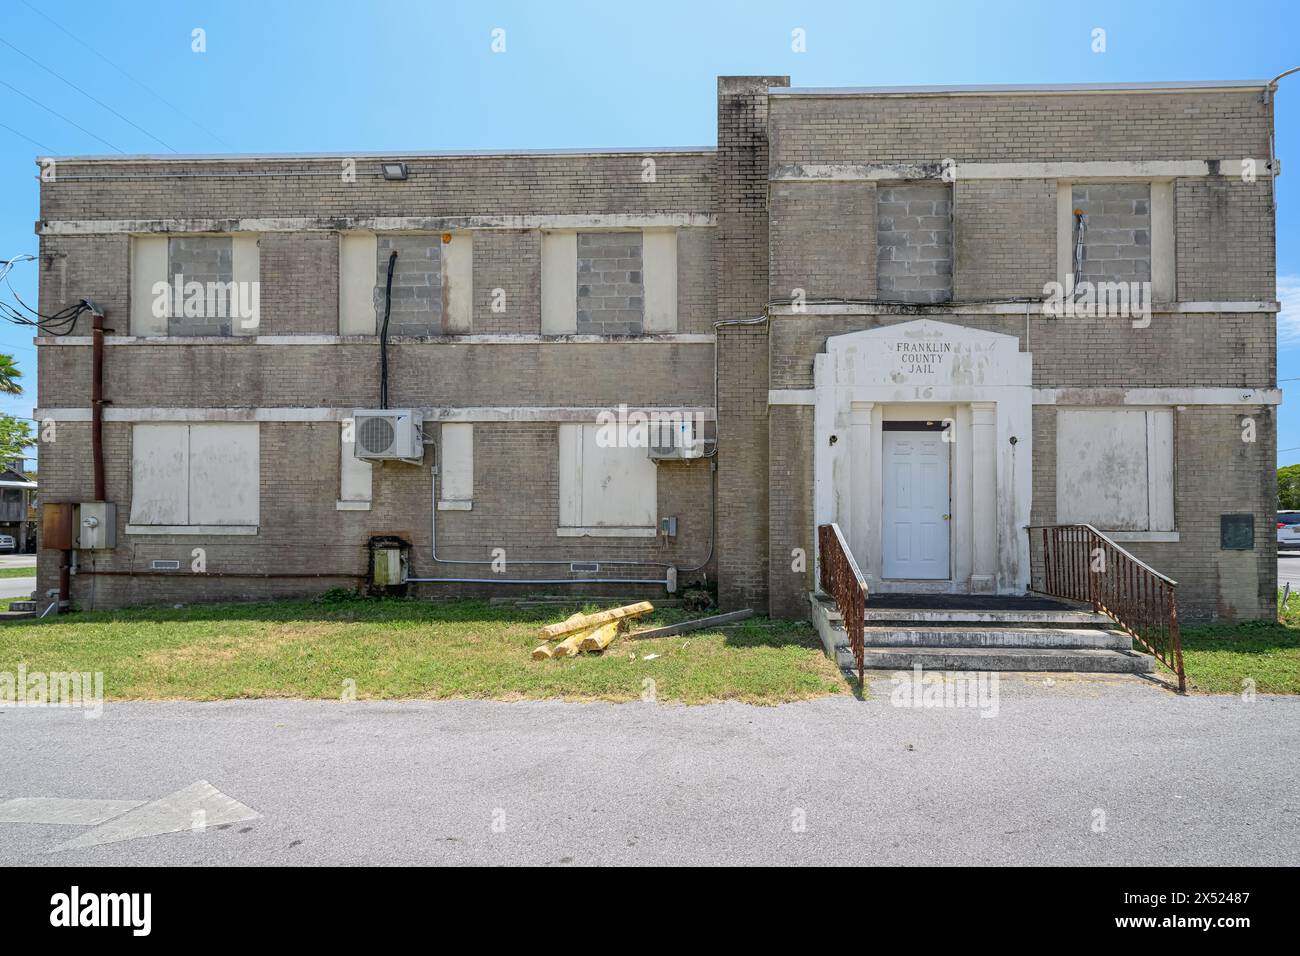 Echos der Vergangenheit: Das verschlossene Franklin County Jailhouse ist ein stiller Zeuge der Geschichte, seine verwitterten Mauern enthalten Geschichten aus vergangenen Zeiten Stockfoto